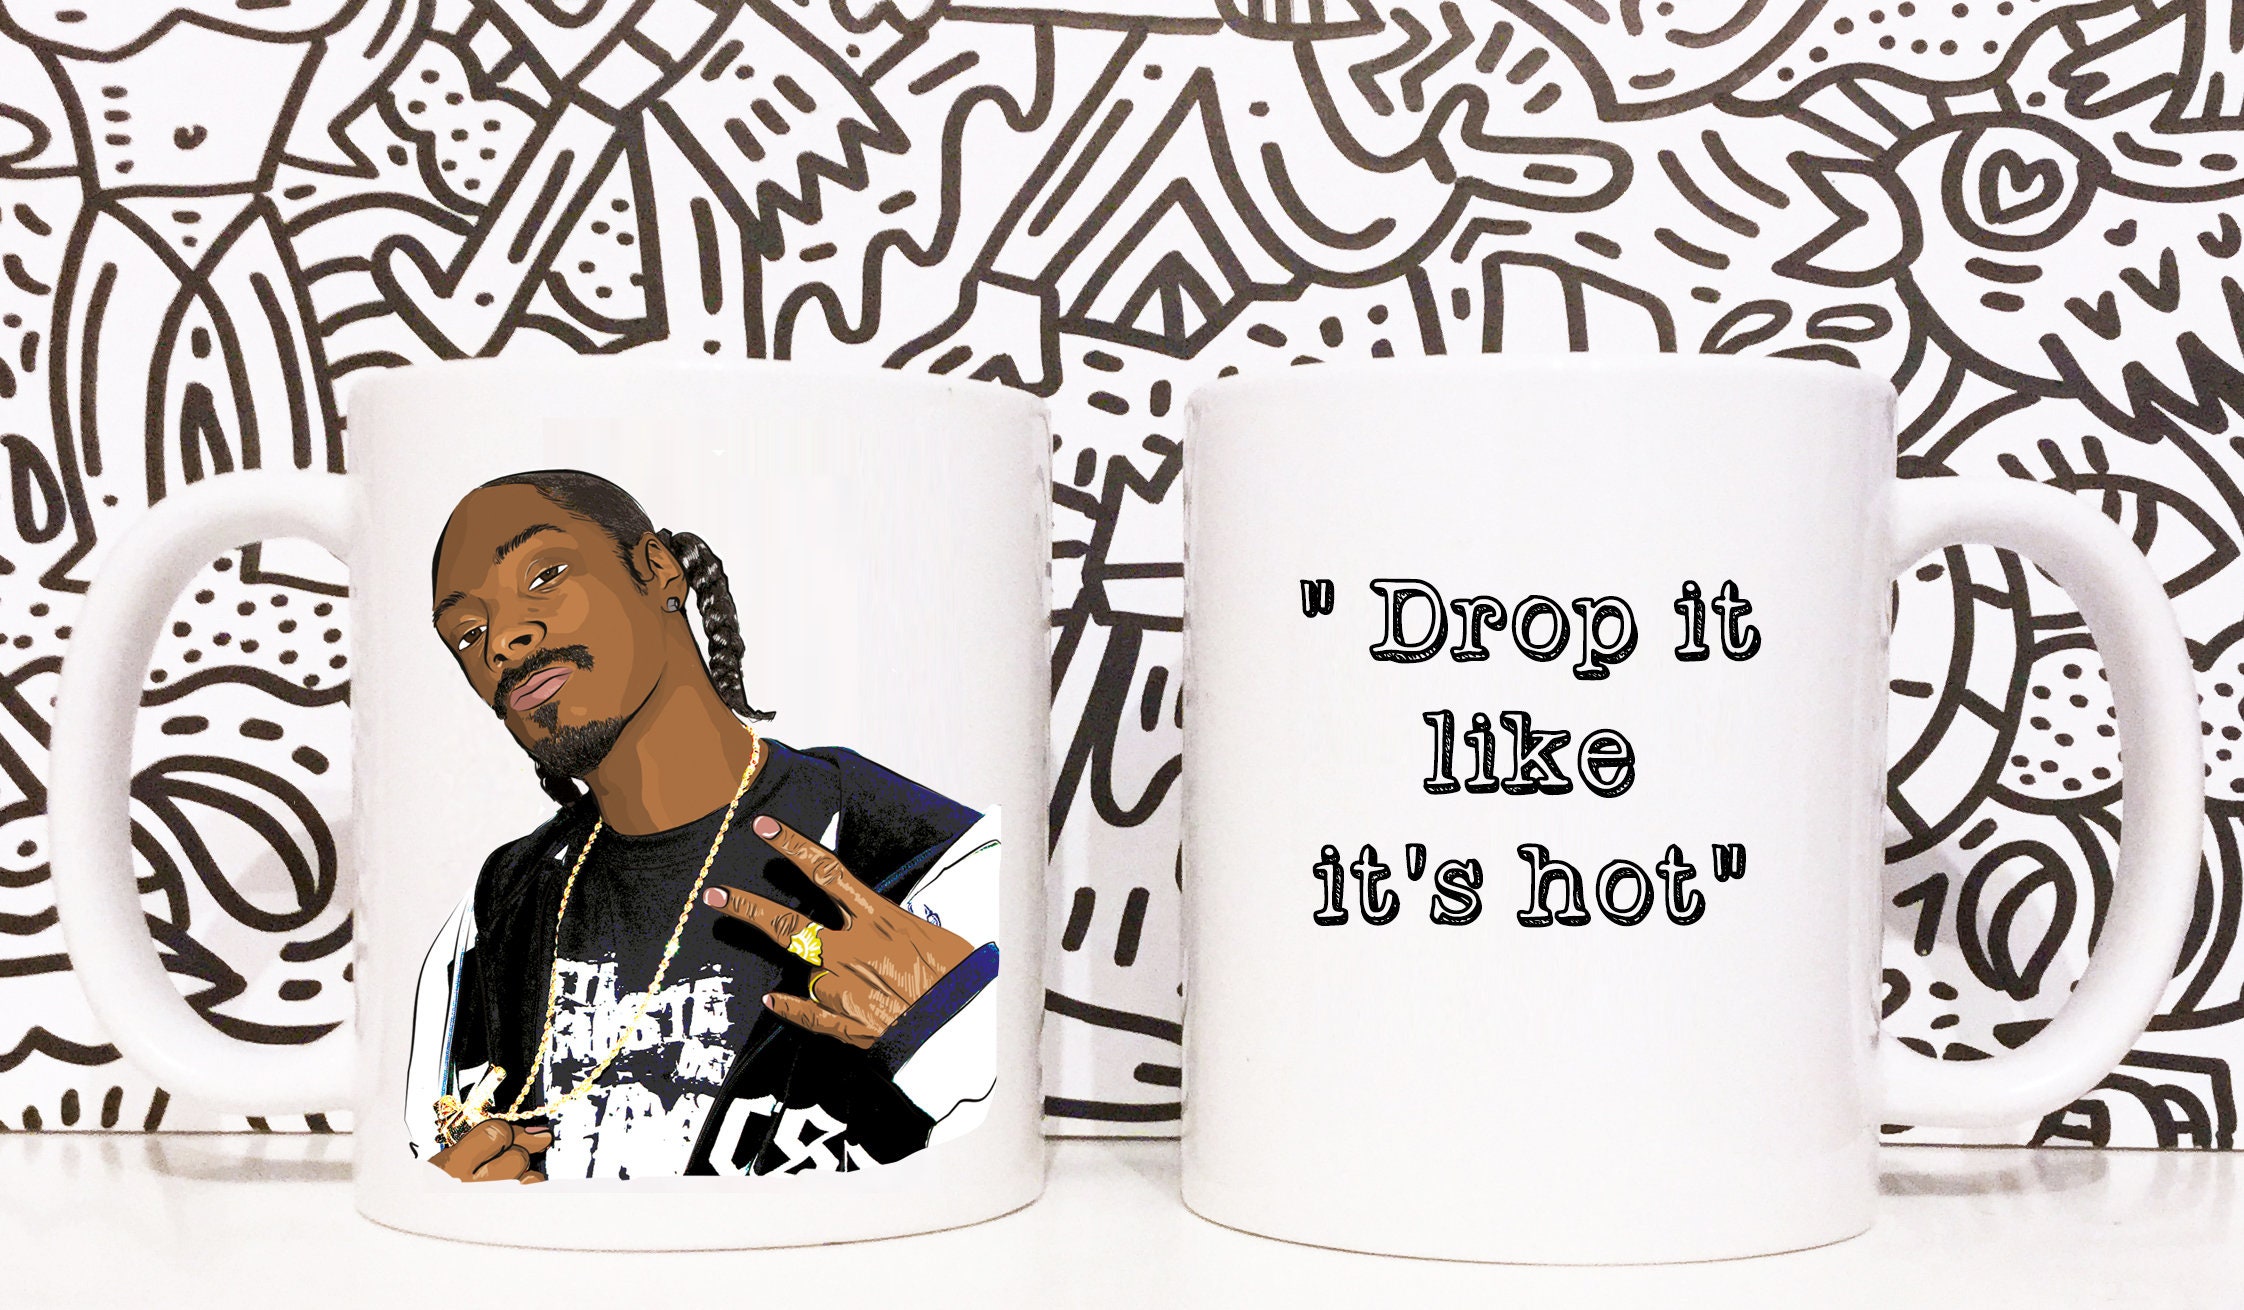 Snoop Dogg Drop it like it's hot. Snoop dogg drop it like